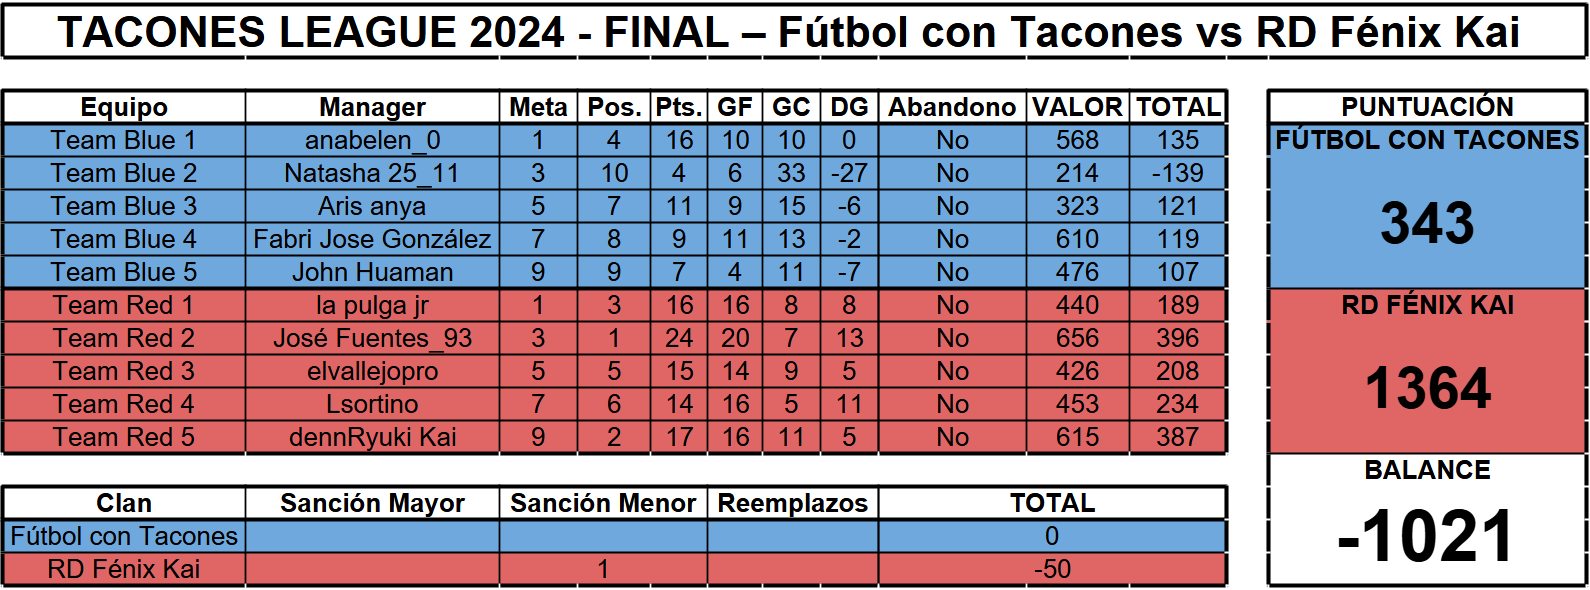 Tacones League 2024 Final.png